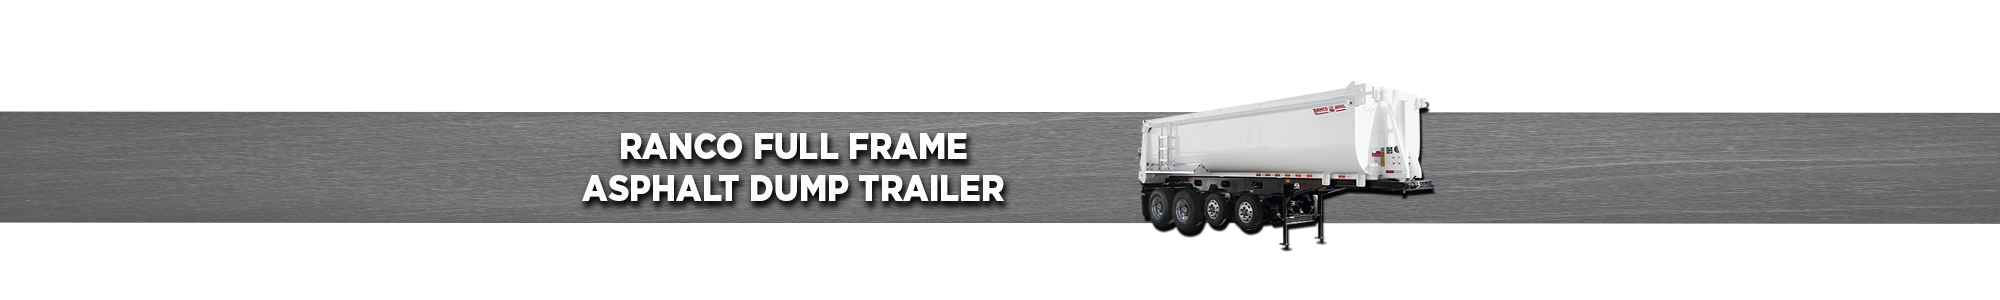 RANCO Full Frame Asphalt Dump Trailer